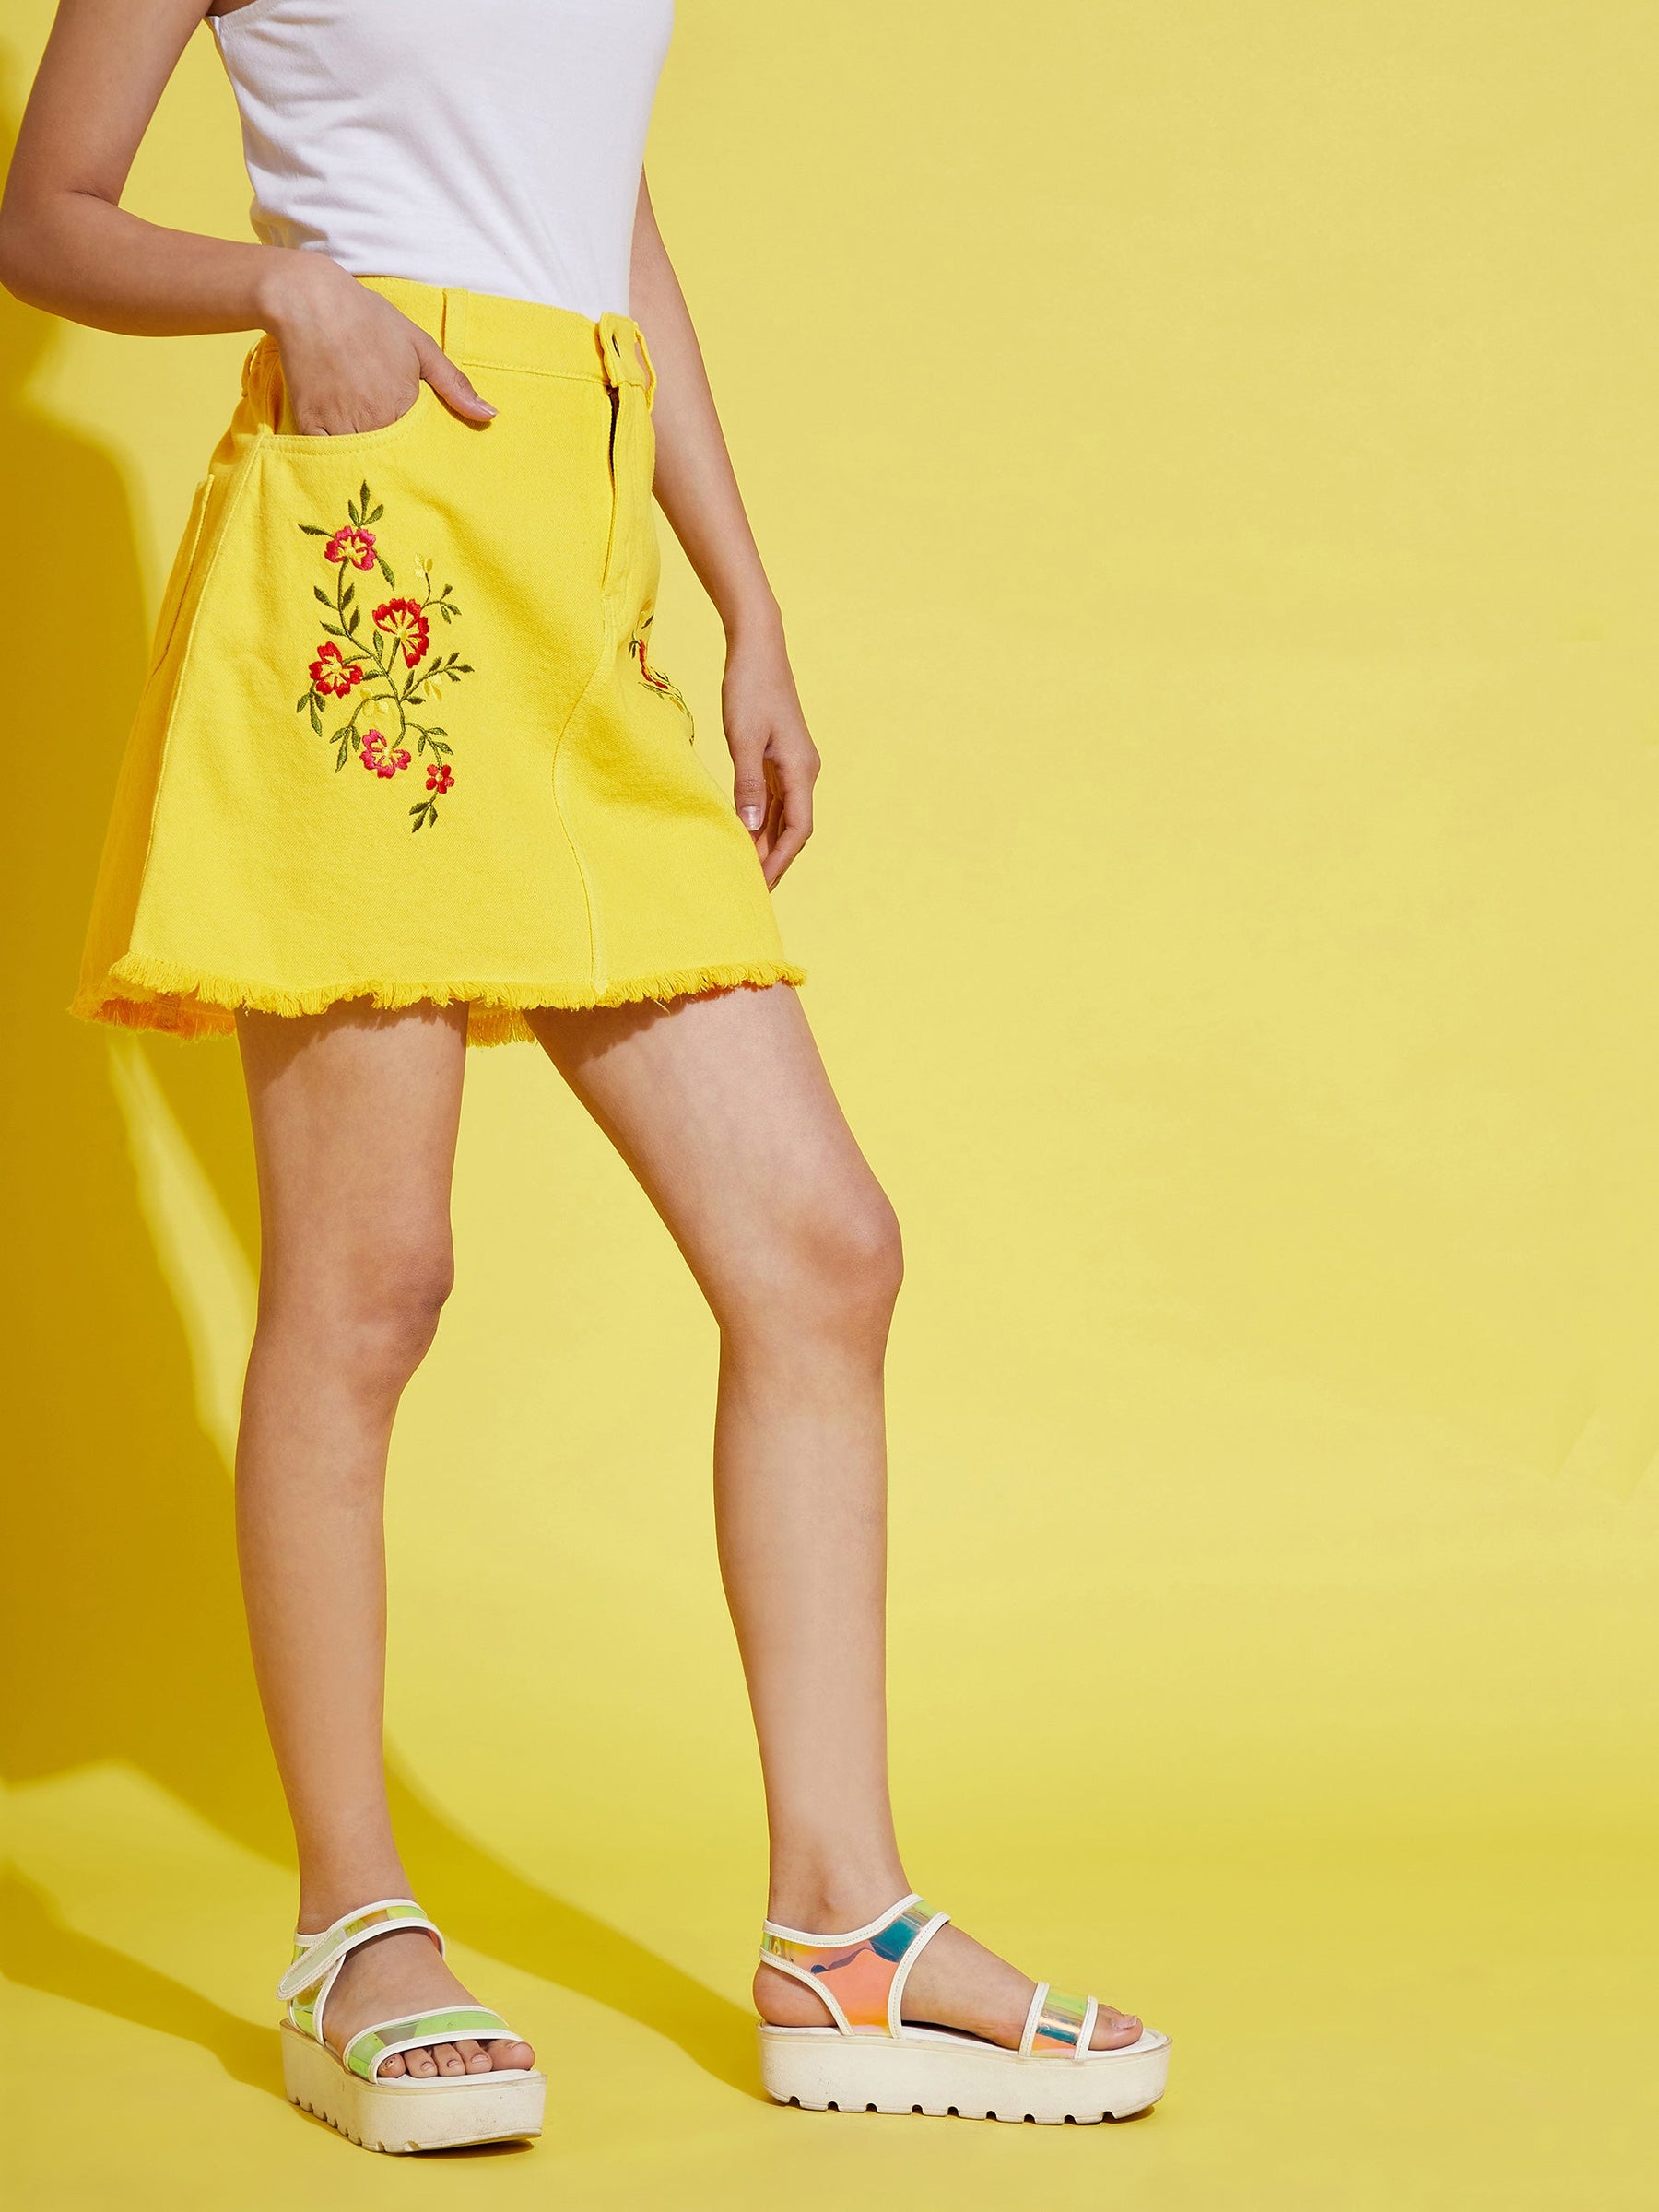 Girls Yellow Embroidery Raw Hem Denim Mini Skirt